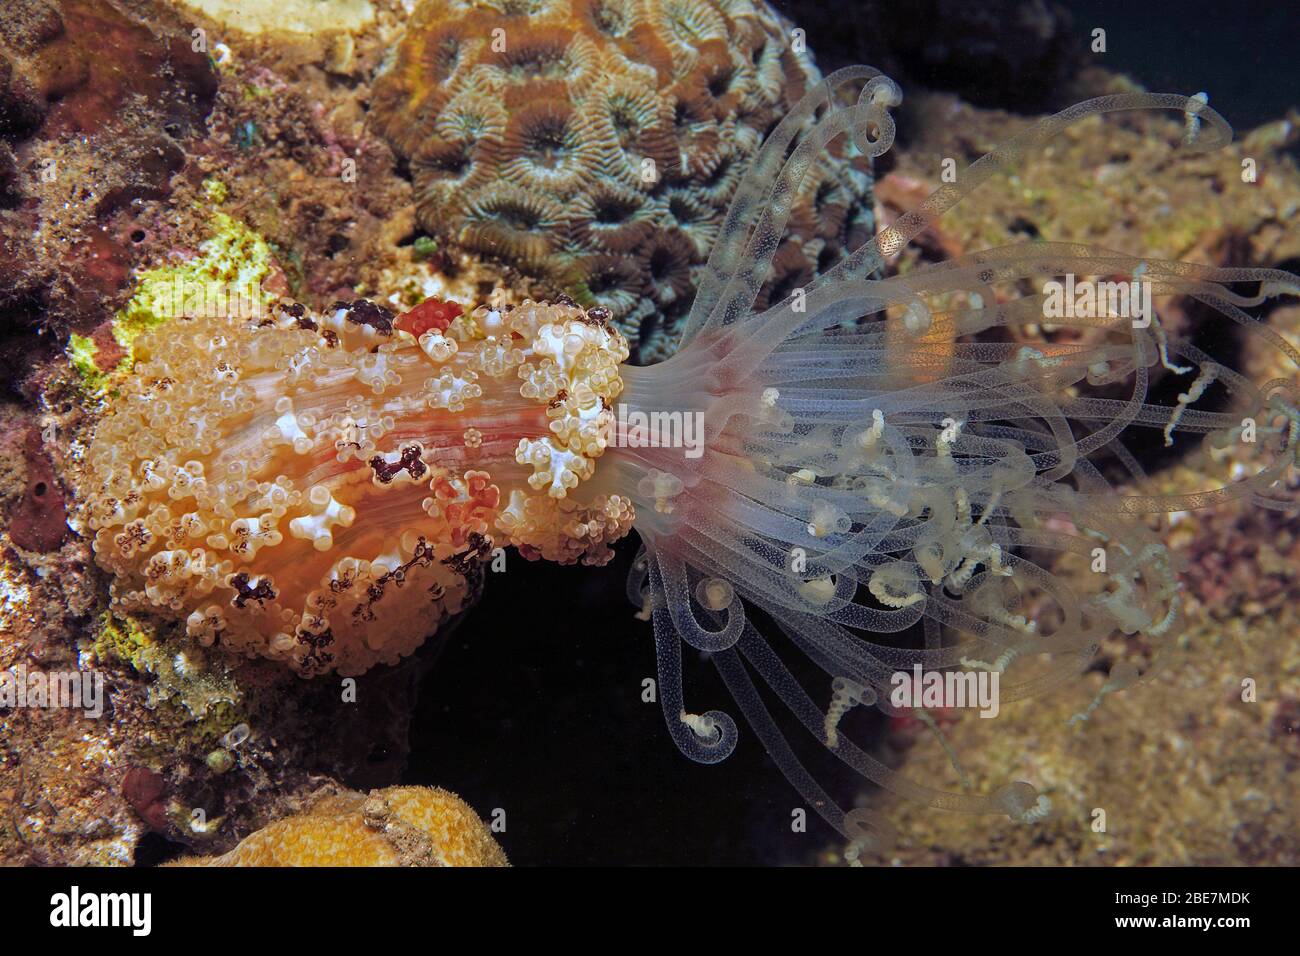 Notte Tuberculate Anemone (Alicia sansibarensis), anemone marino con tentacoli estremamente lunghi, Camiguin, Filippine Foto Stock